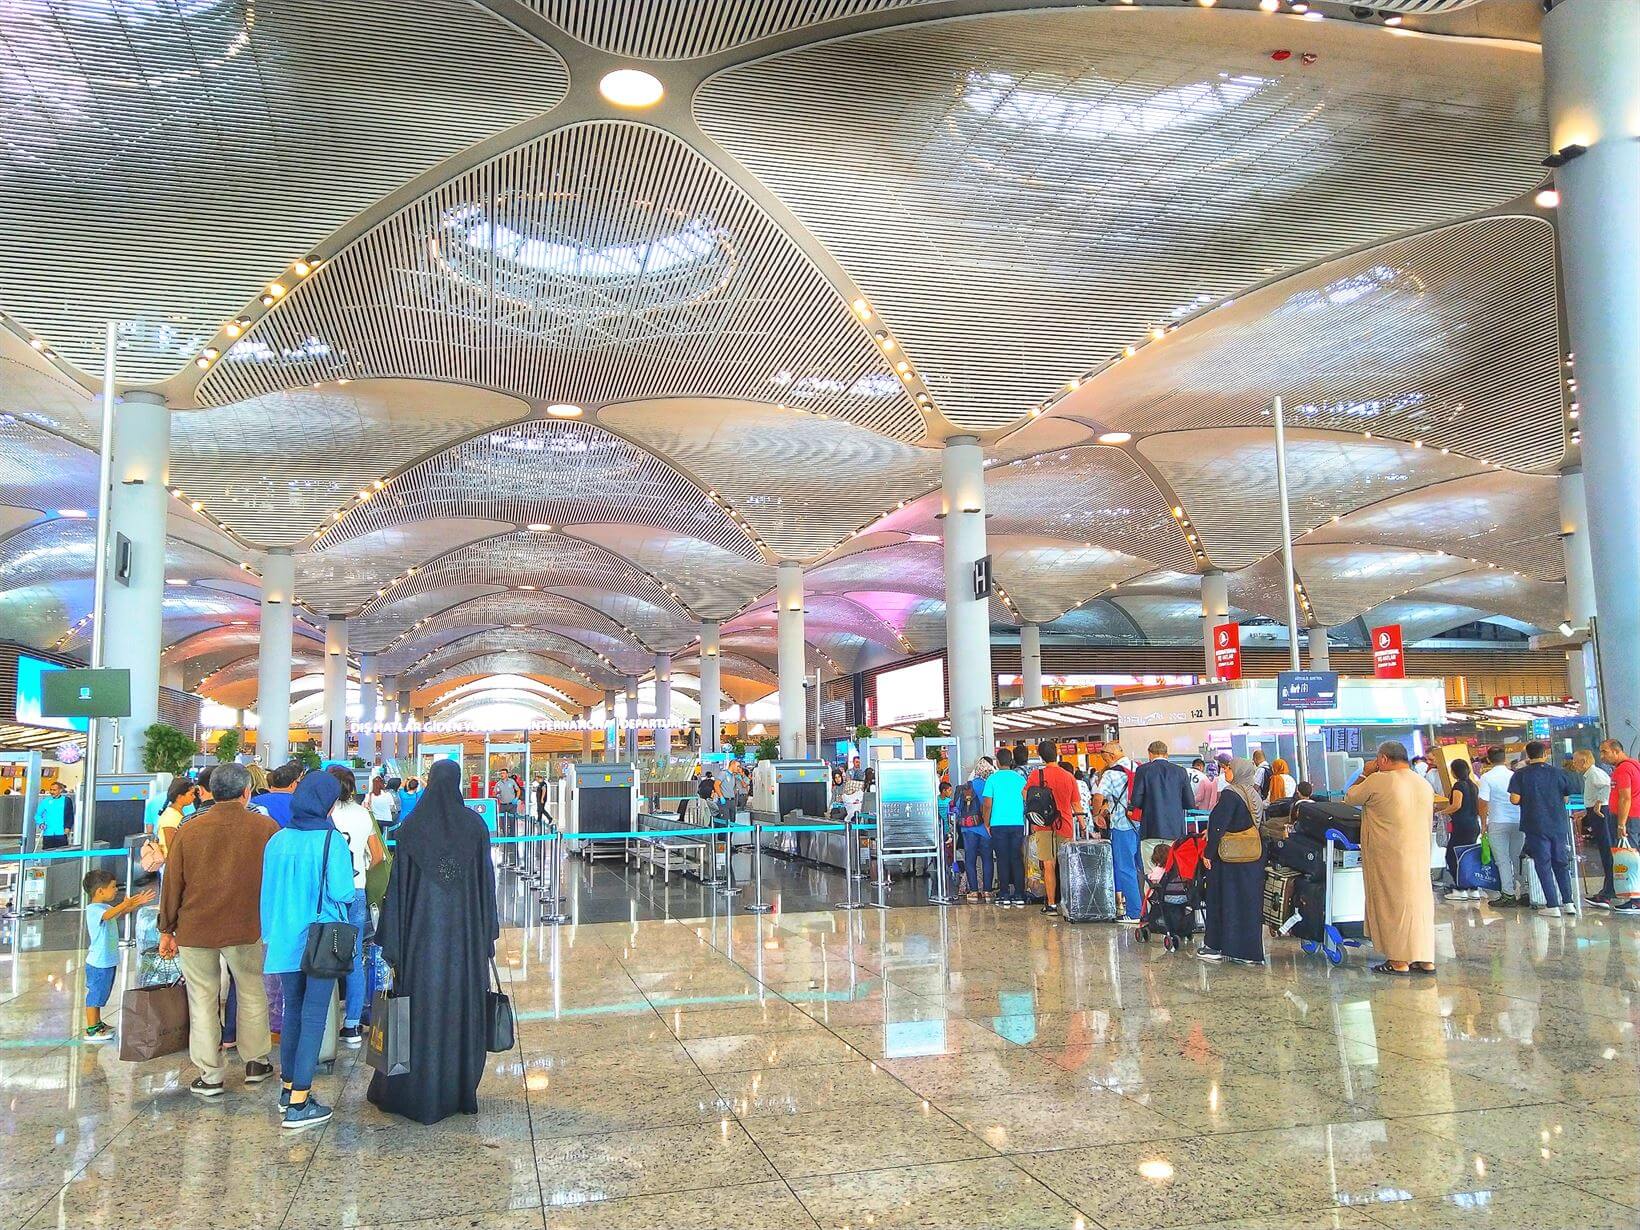 Fila detectores de metal entrada aeroporto istambul